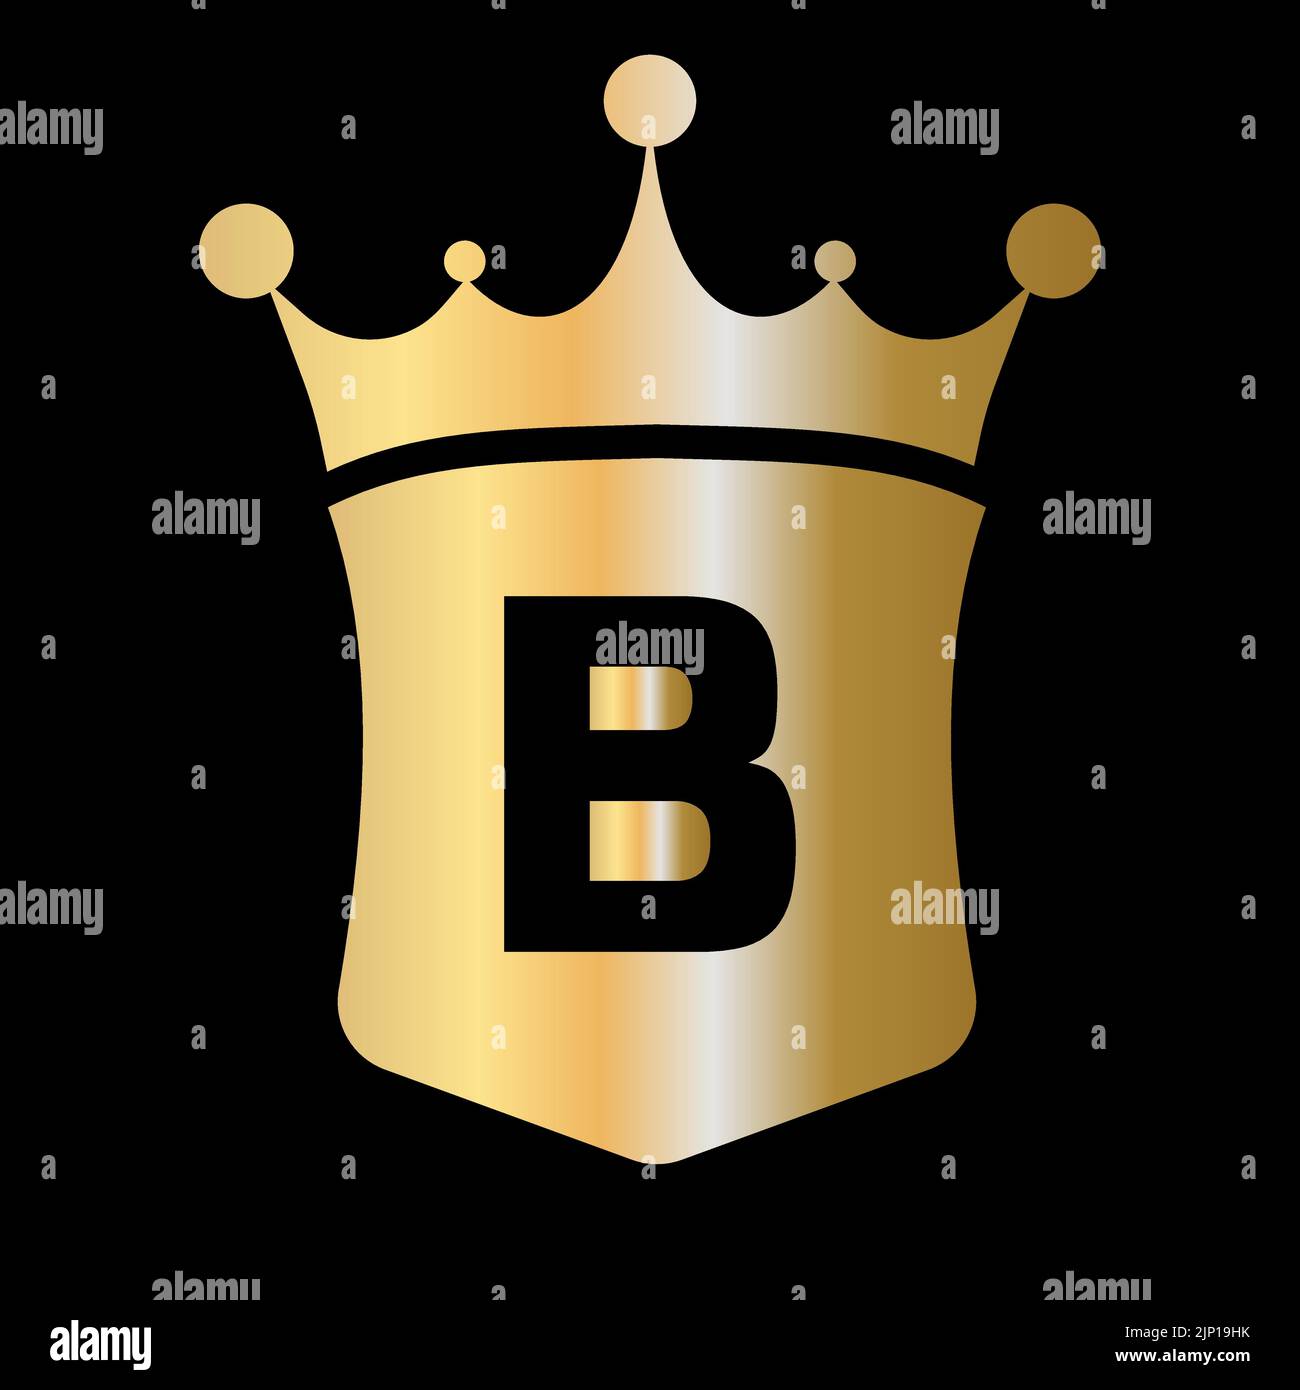 Plantilla vectorial con logotipo de corona y escudo con letra B y símbolo de concepto de lujo Ilustración del Vector